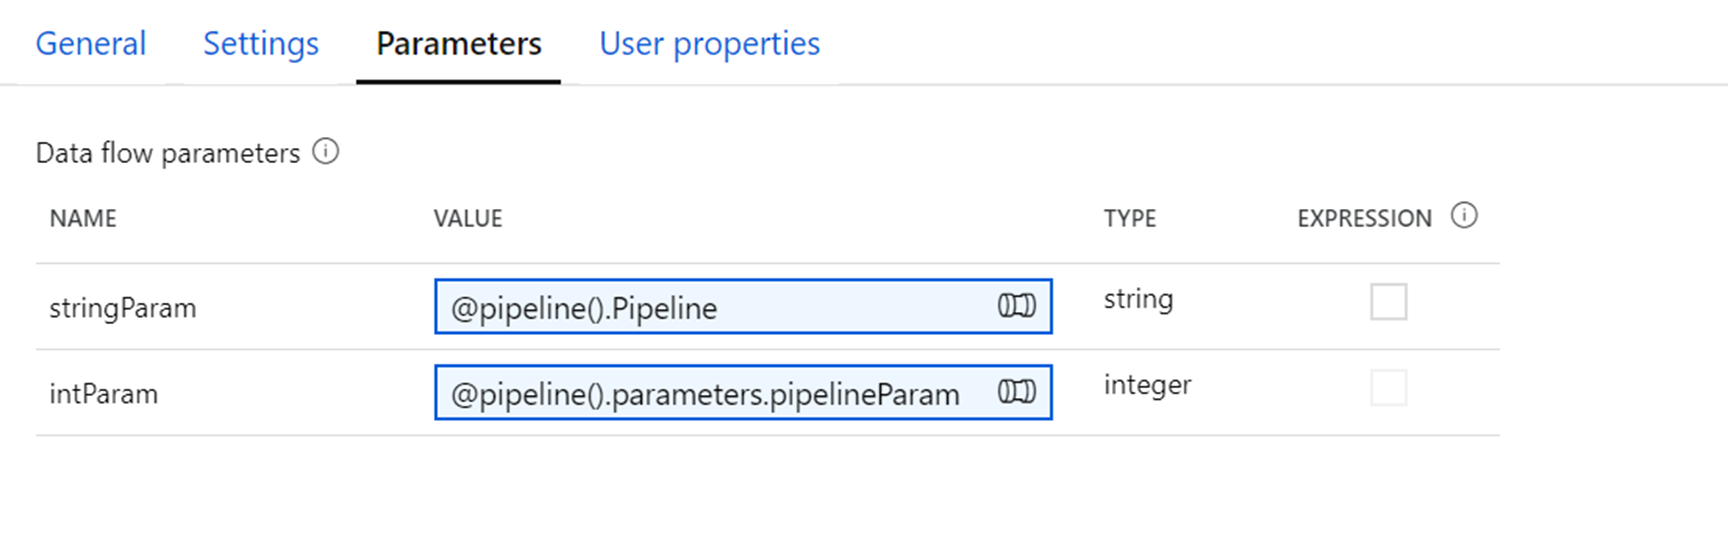 Capture d’écran montrant l’onglet Paramètres avec les paramètres nommés stringParam et intParam.